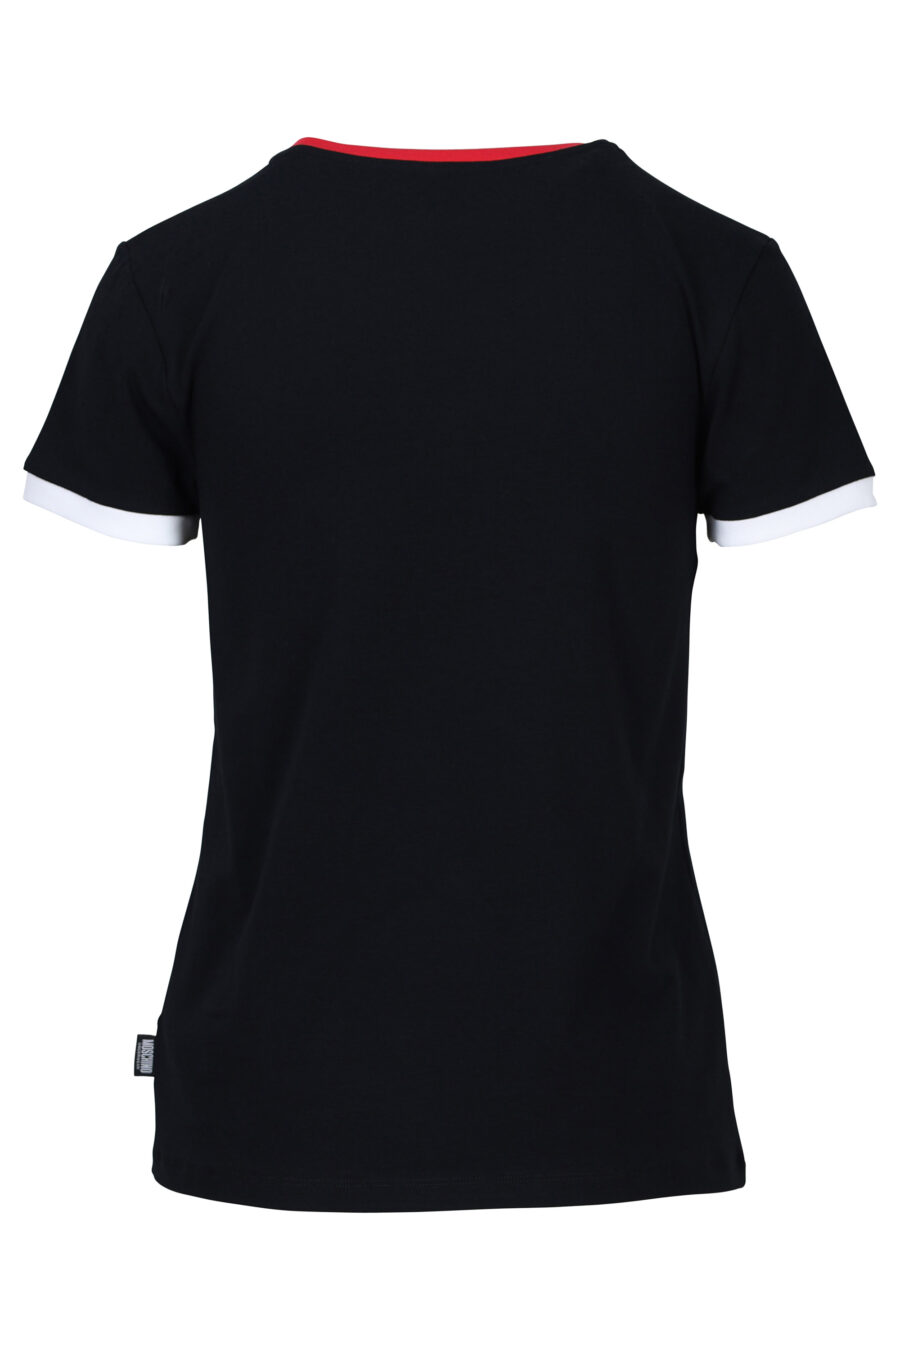 Camiseta negra con rojo y logo oso "underbear" parche - 667113062082 1